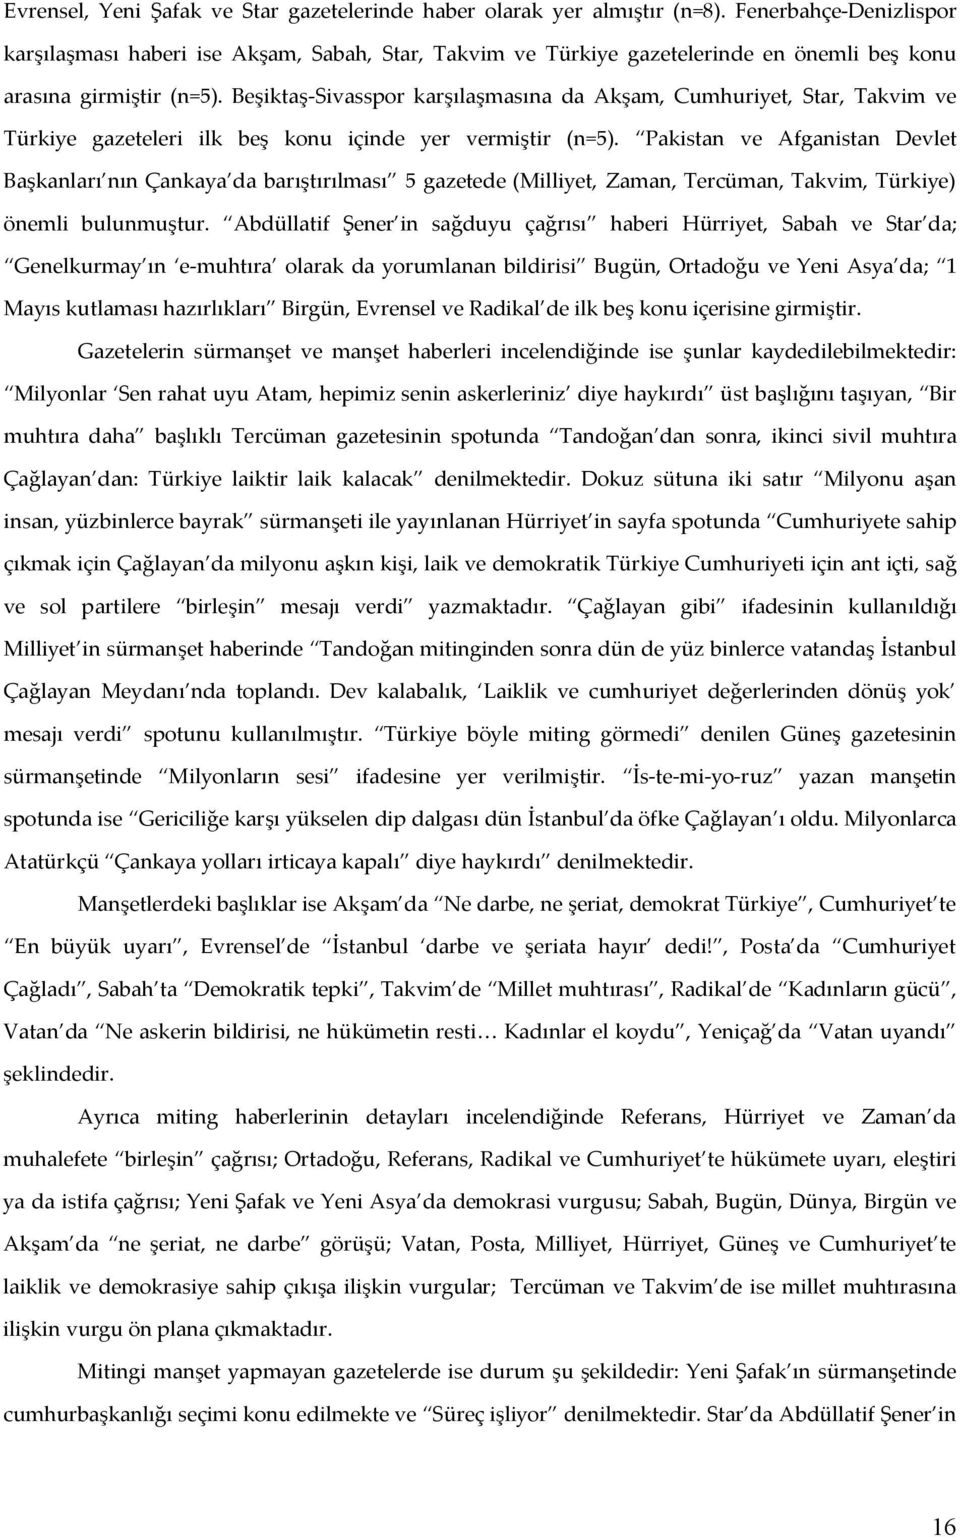 Beşiktaş-Sivasspor karşılaşmasına da Akşam, Cumhuriyet, Star, Takvim ve Türkiye gazeteleri ilk beş konu içinde yer vermiştir (n=5).